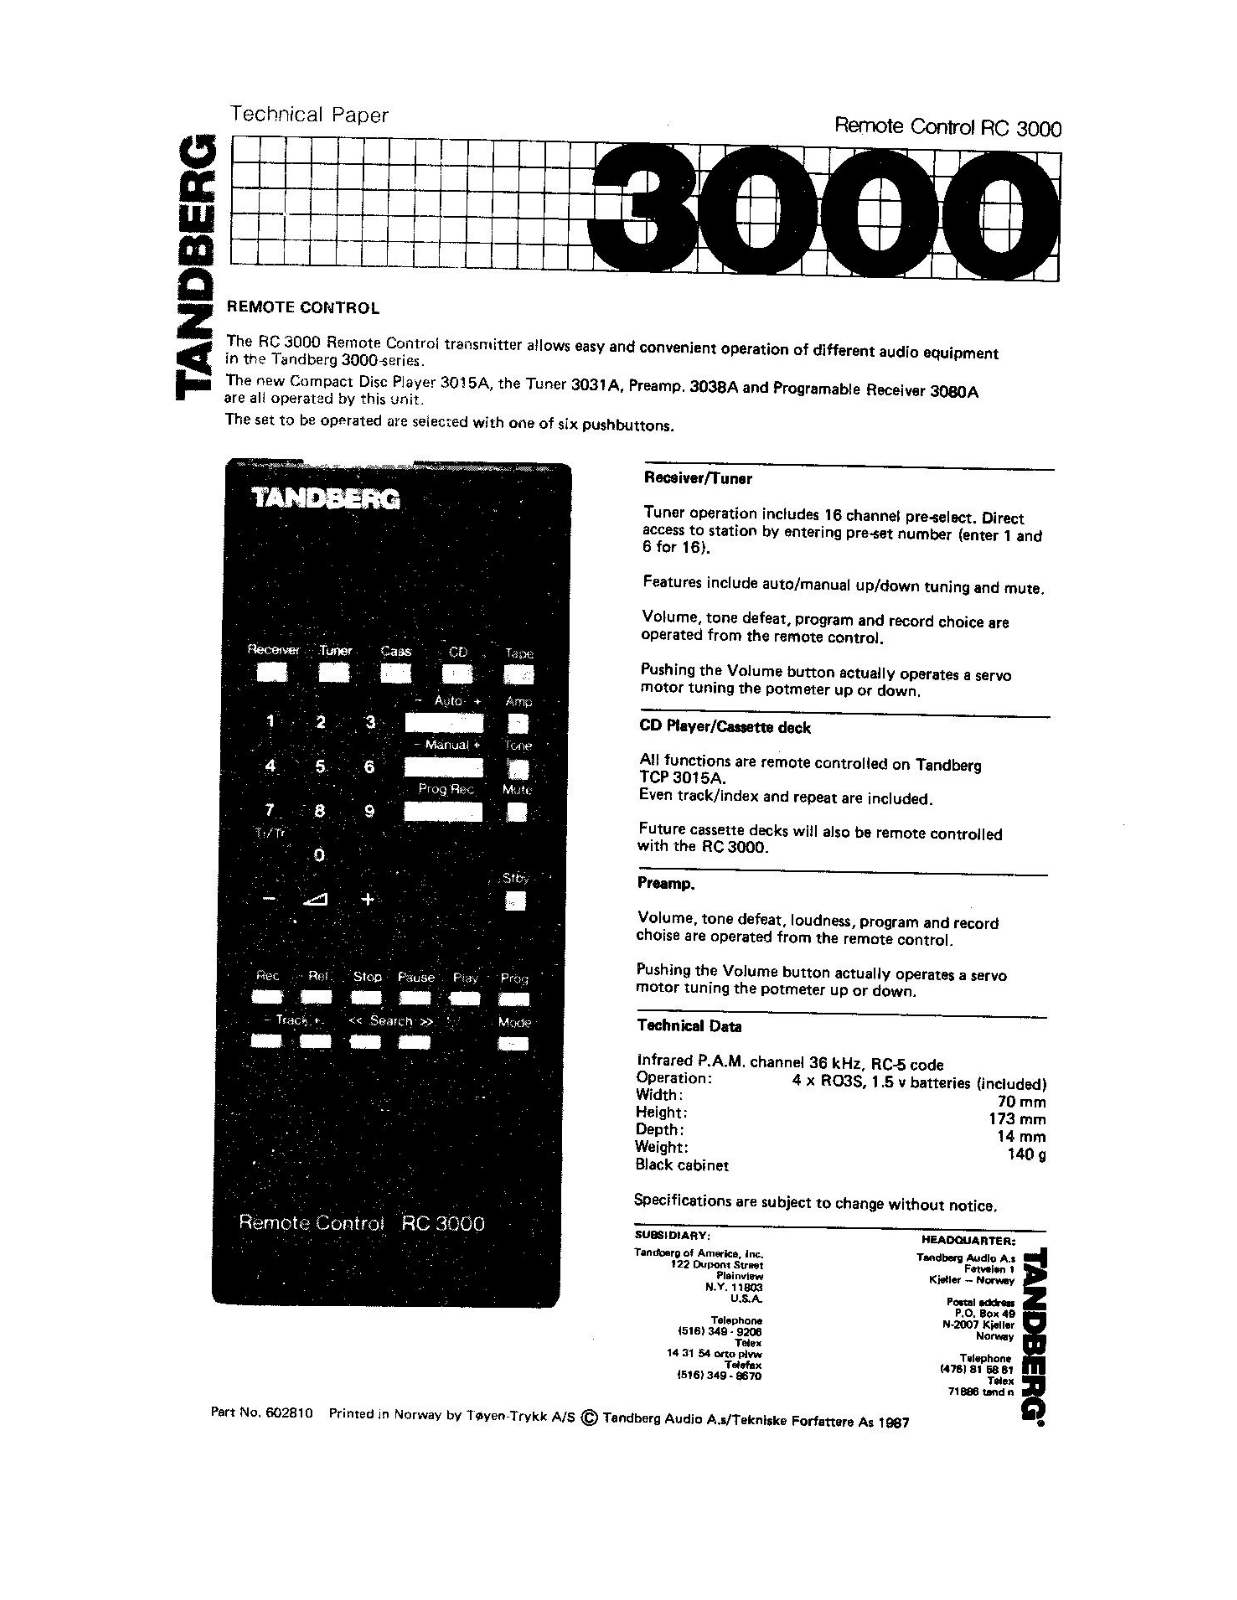 Tandberg RC-3000, TCA-3002-A, TCA-3018-A, TCA-3038-A, TCD-3014-A Brochure